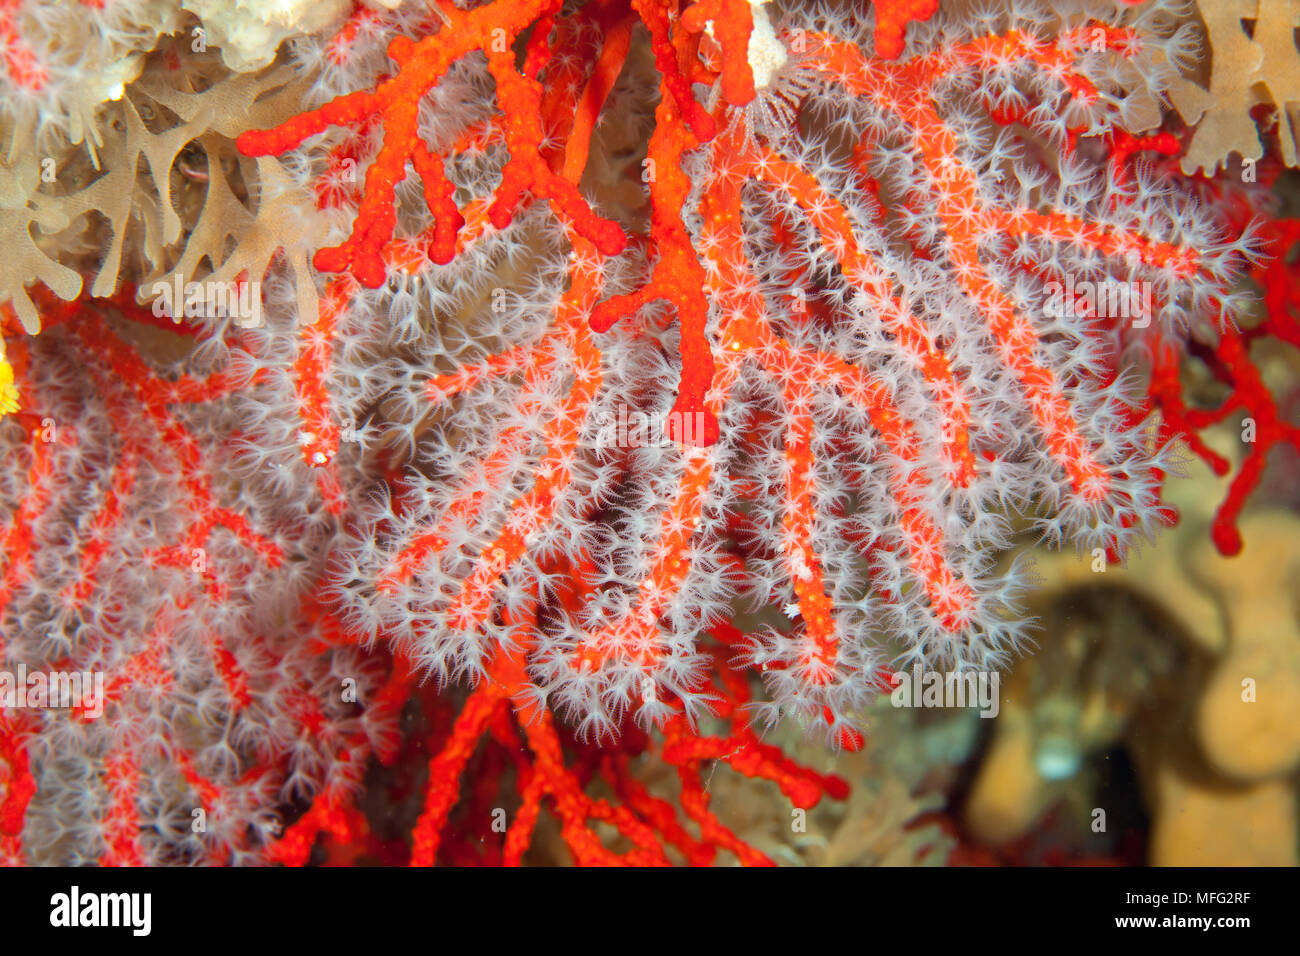 Le corail rouge, corallium rubrum, vulnérables (UICN), Santa Teresa, Sardaigne, Italie, Méditerranée, Mer Tyrrhénienne Banque D'Images